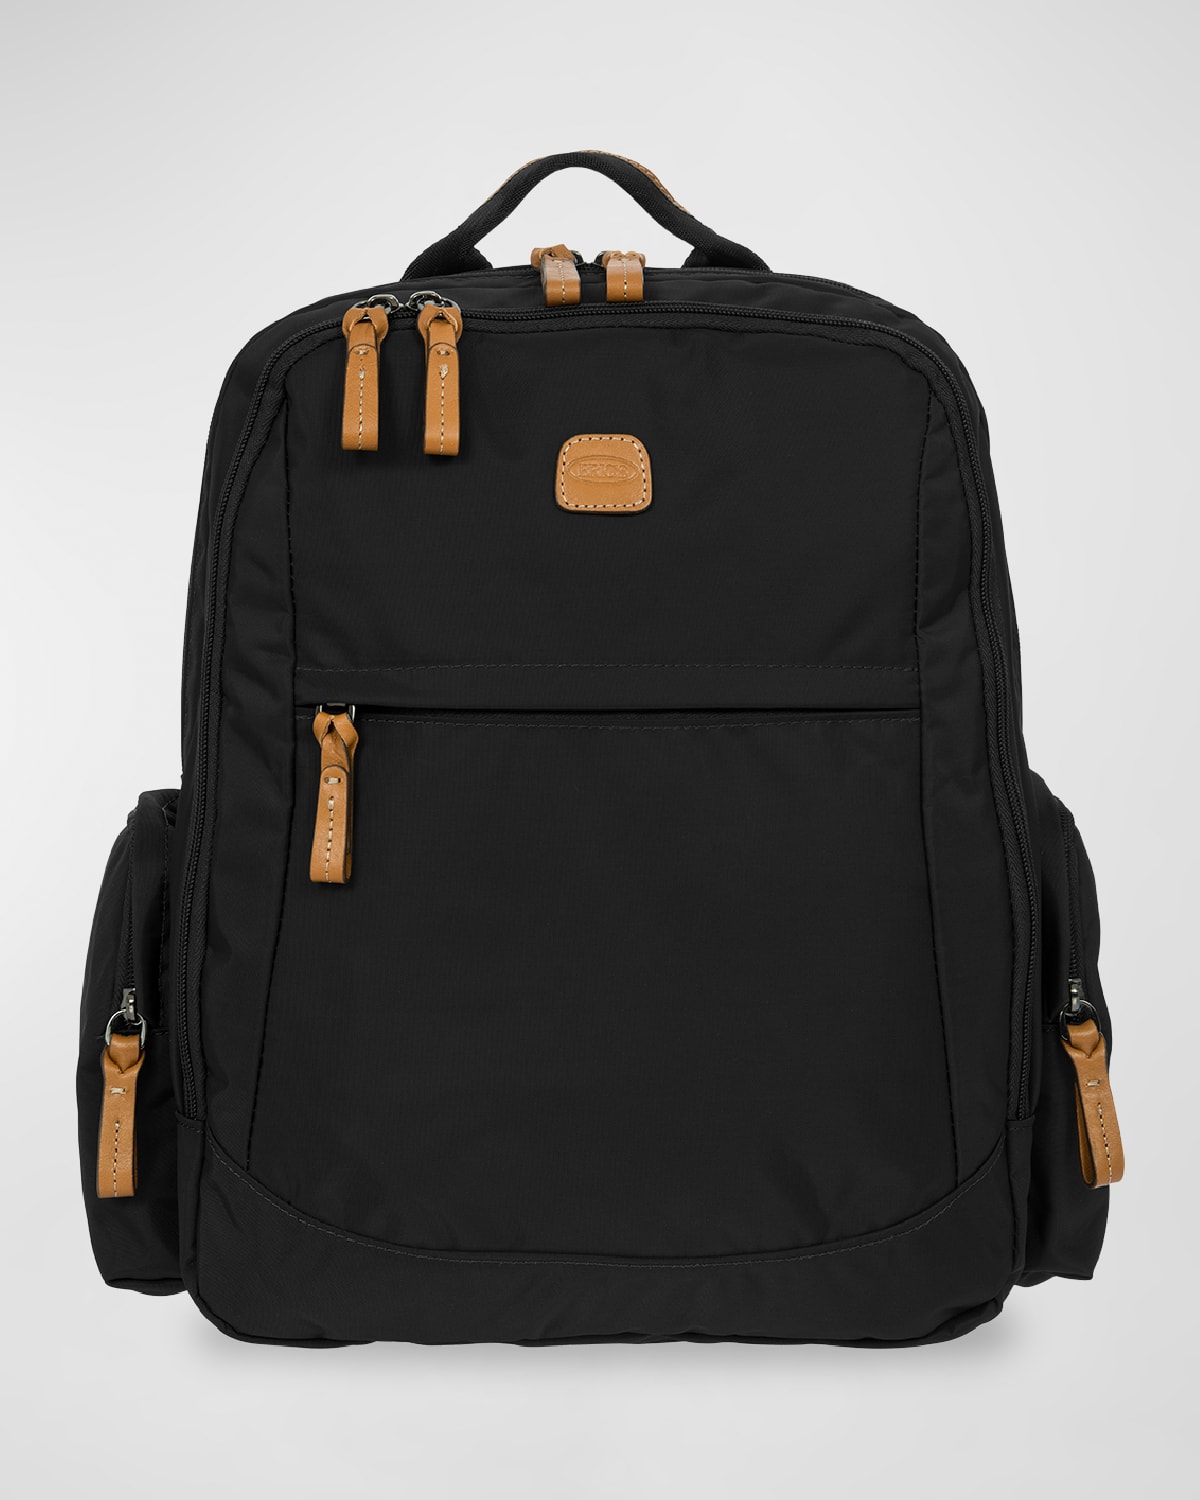 X-Travel Nomad Nylon Backpack